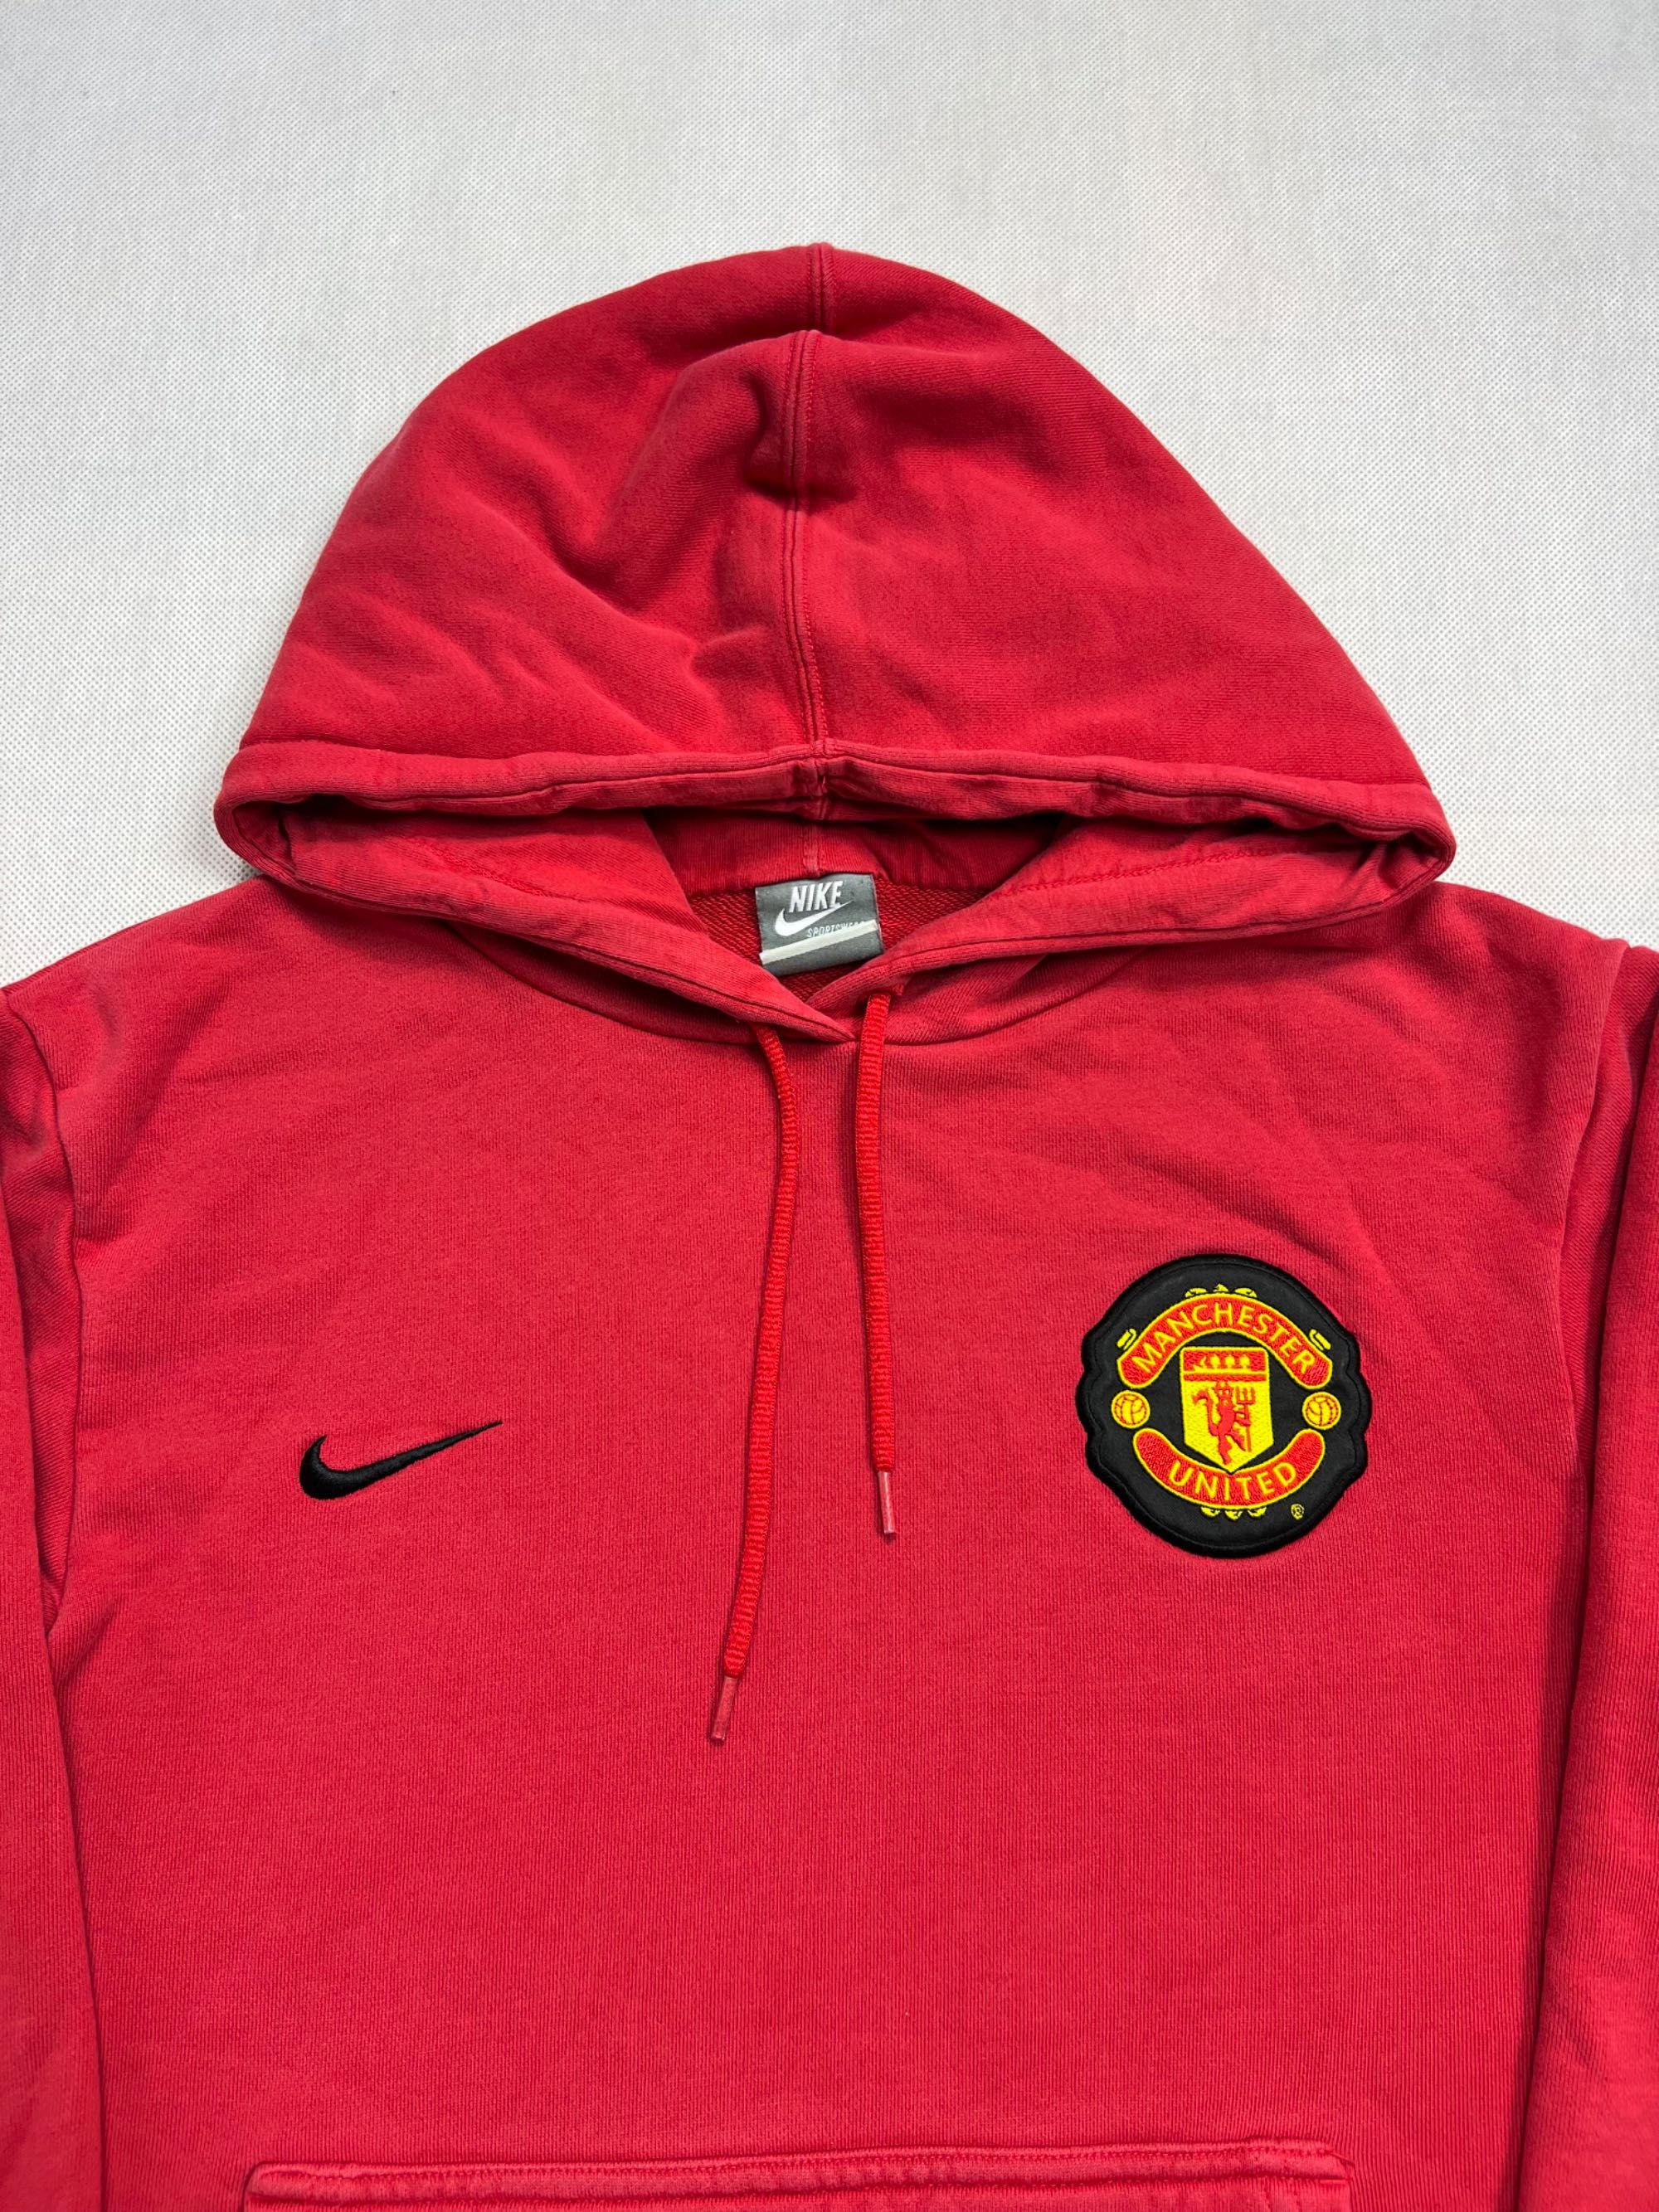 Bluza Nike Manchester United logo y2k 00’s